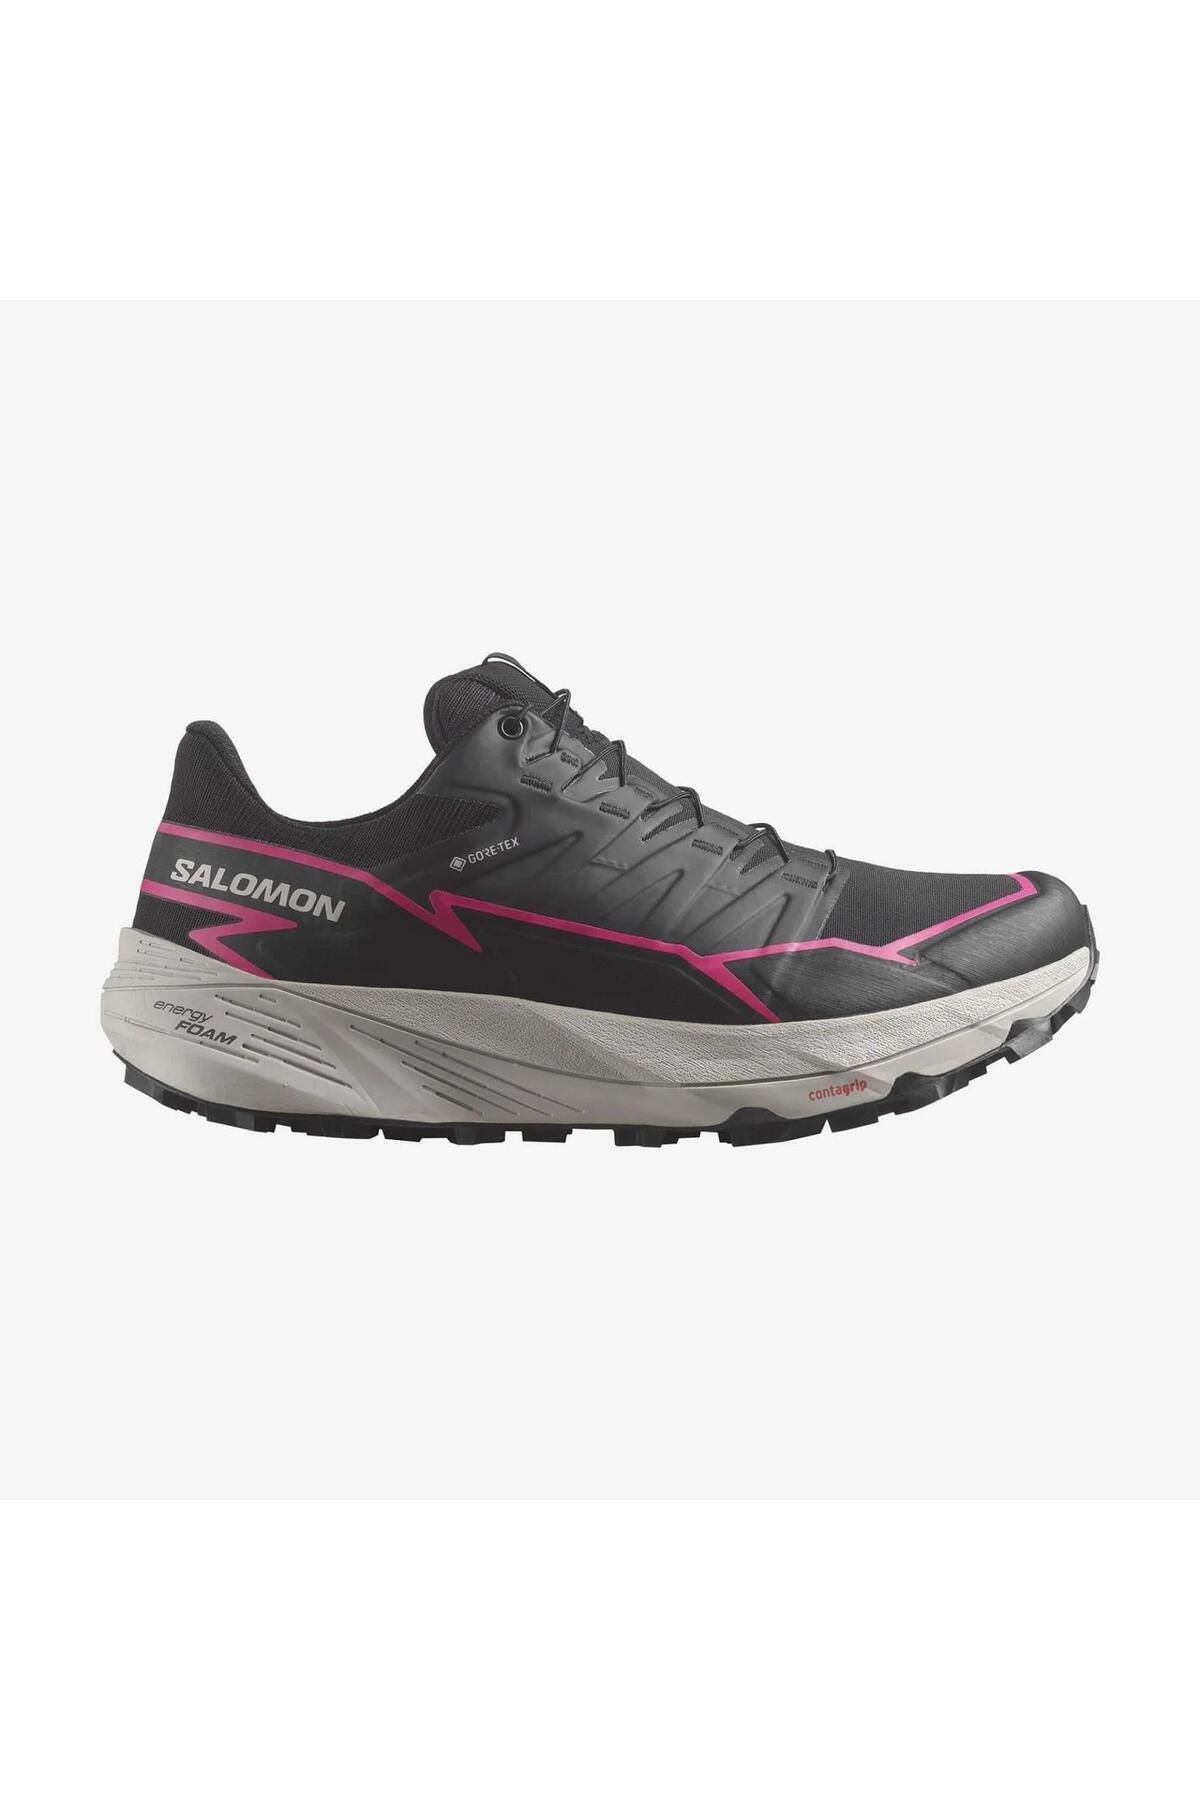 Salomon Thundercross Gore-Tex Kadın Patika Koşu Ayakkabısı-L47383500BPG